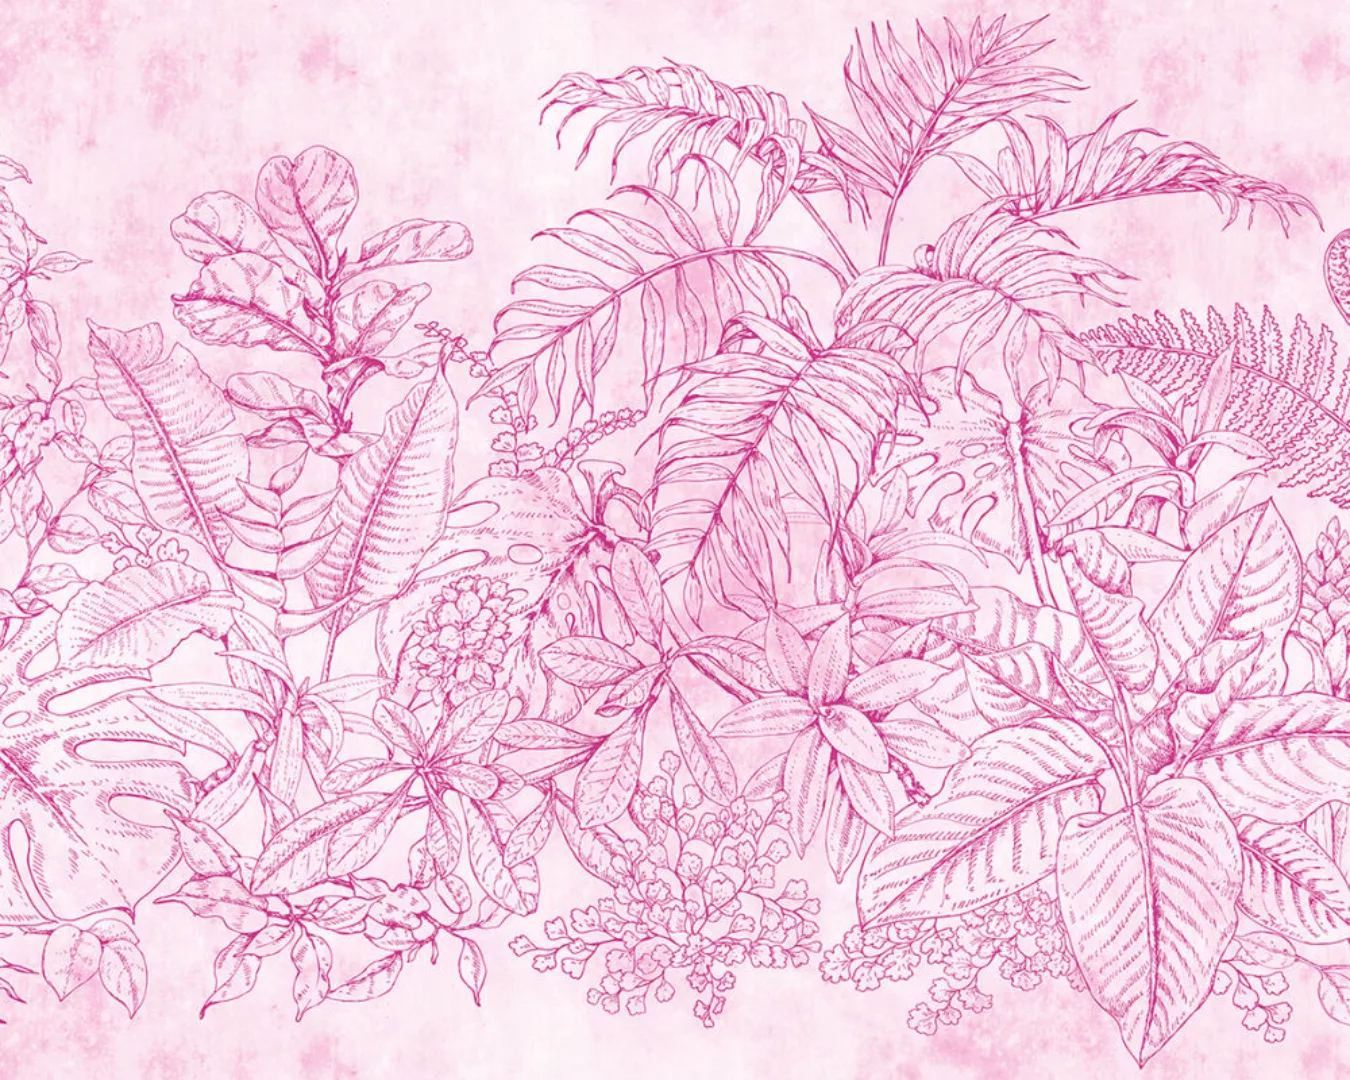 Fototapete "fern garden 2" 5,00x2,70 m / Glattvlies Perlmutt günstig online kaufen